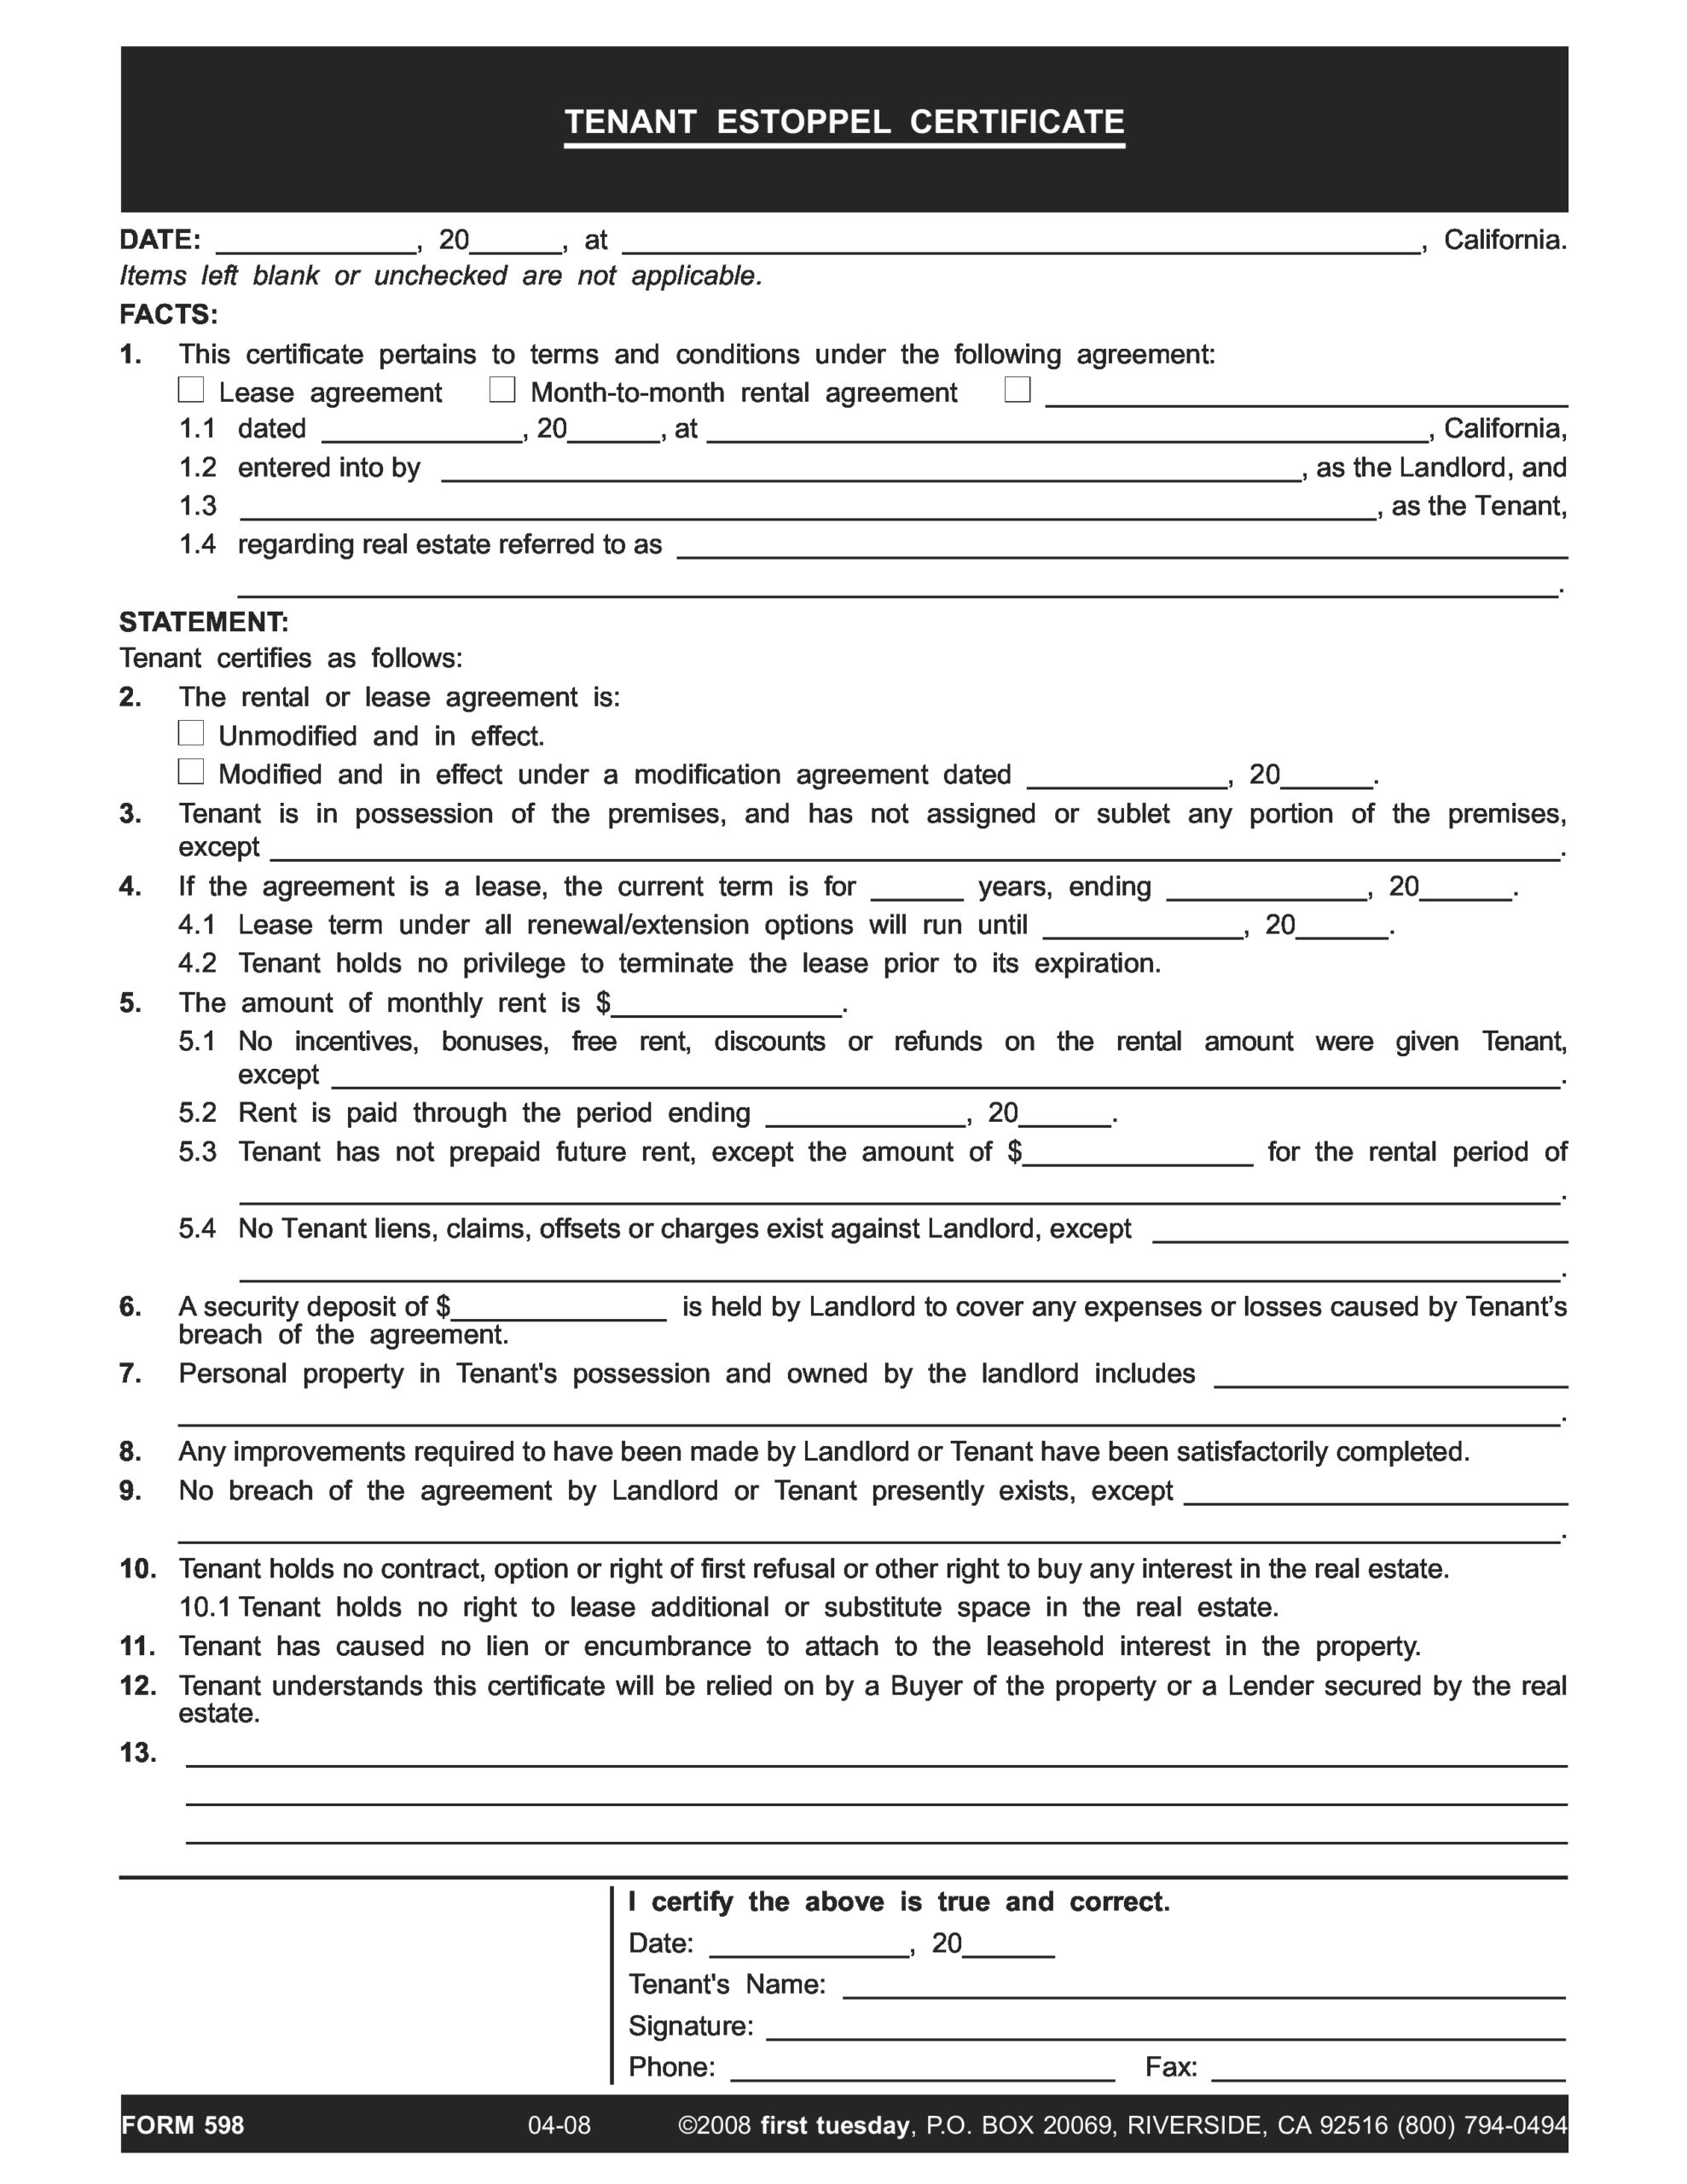 Free estoppel certificate form 30